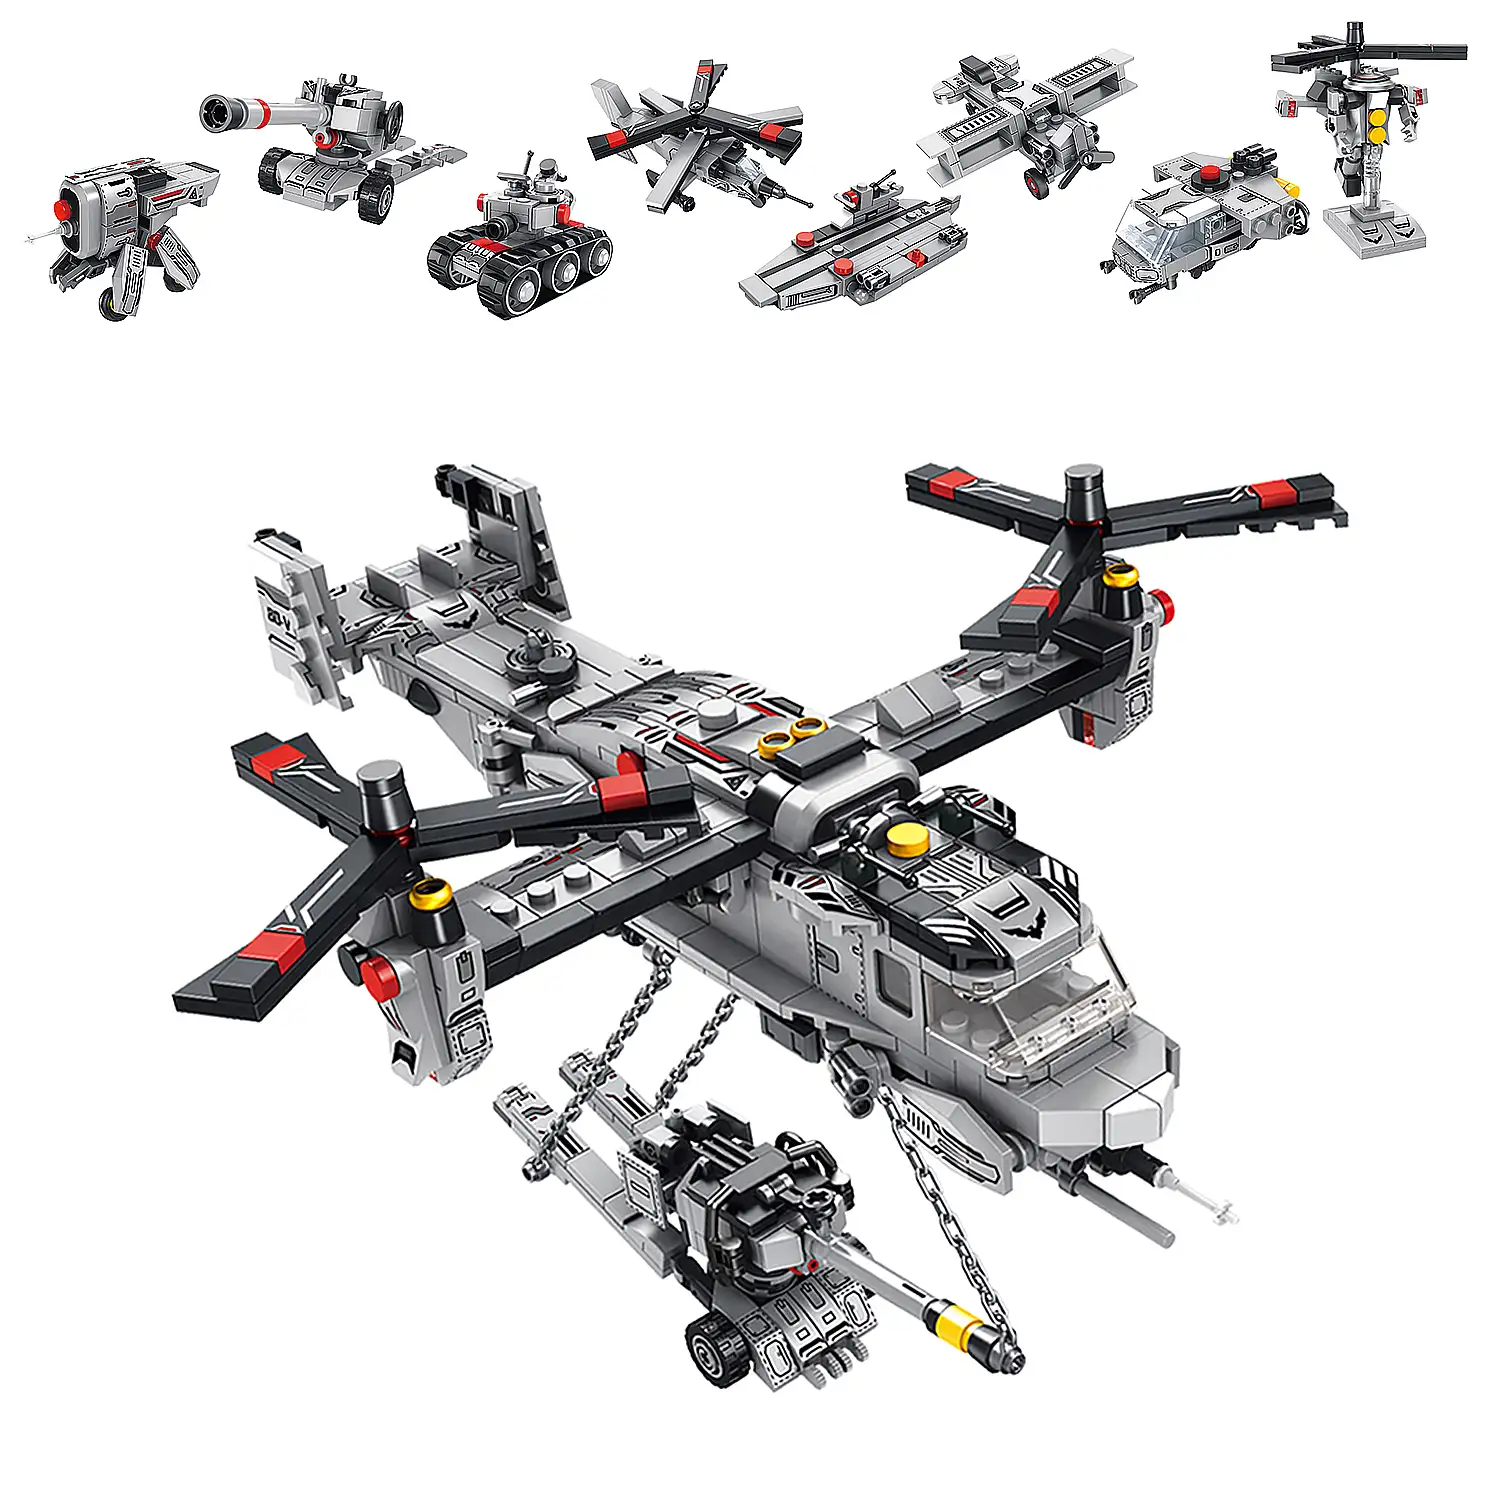 Helicóptero Transporter 8 en 1, con 703 piezas. Construye 8 modelos individuales con 3 formas cada uno.